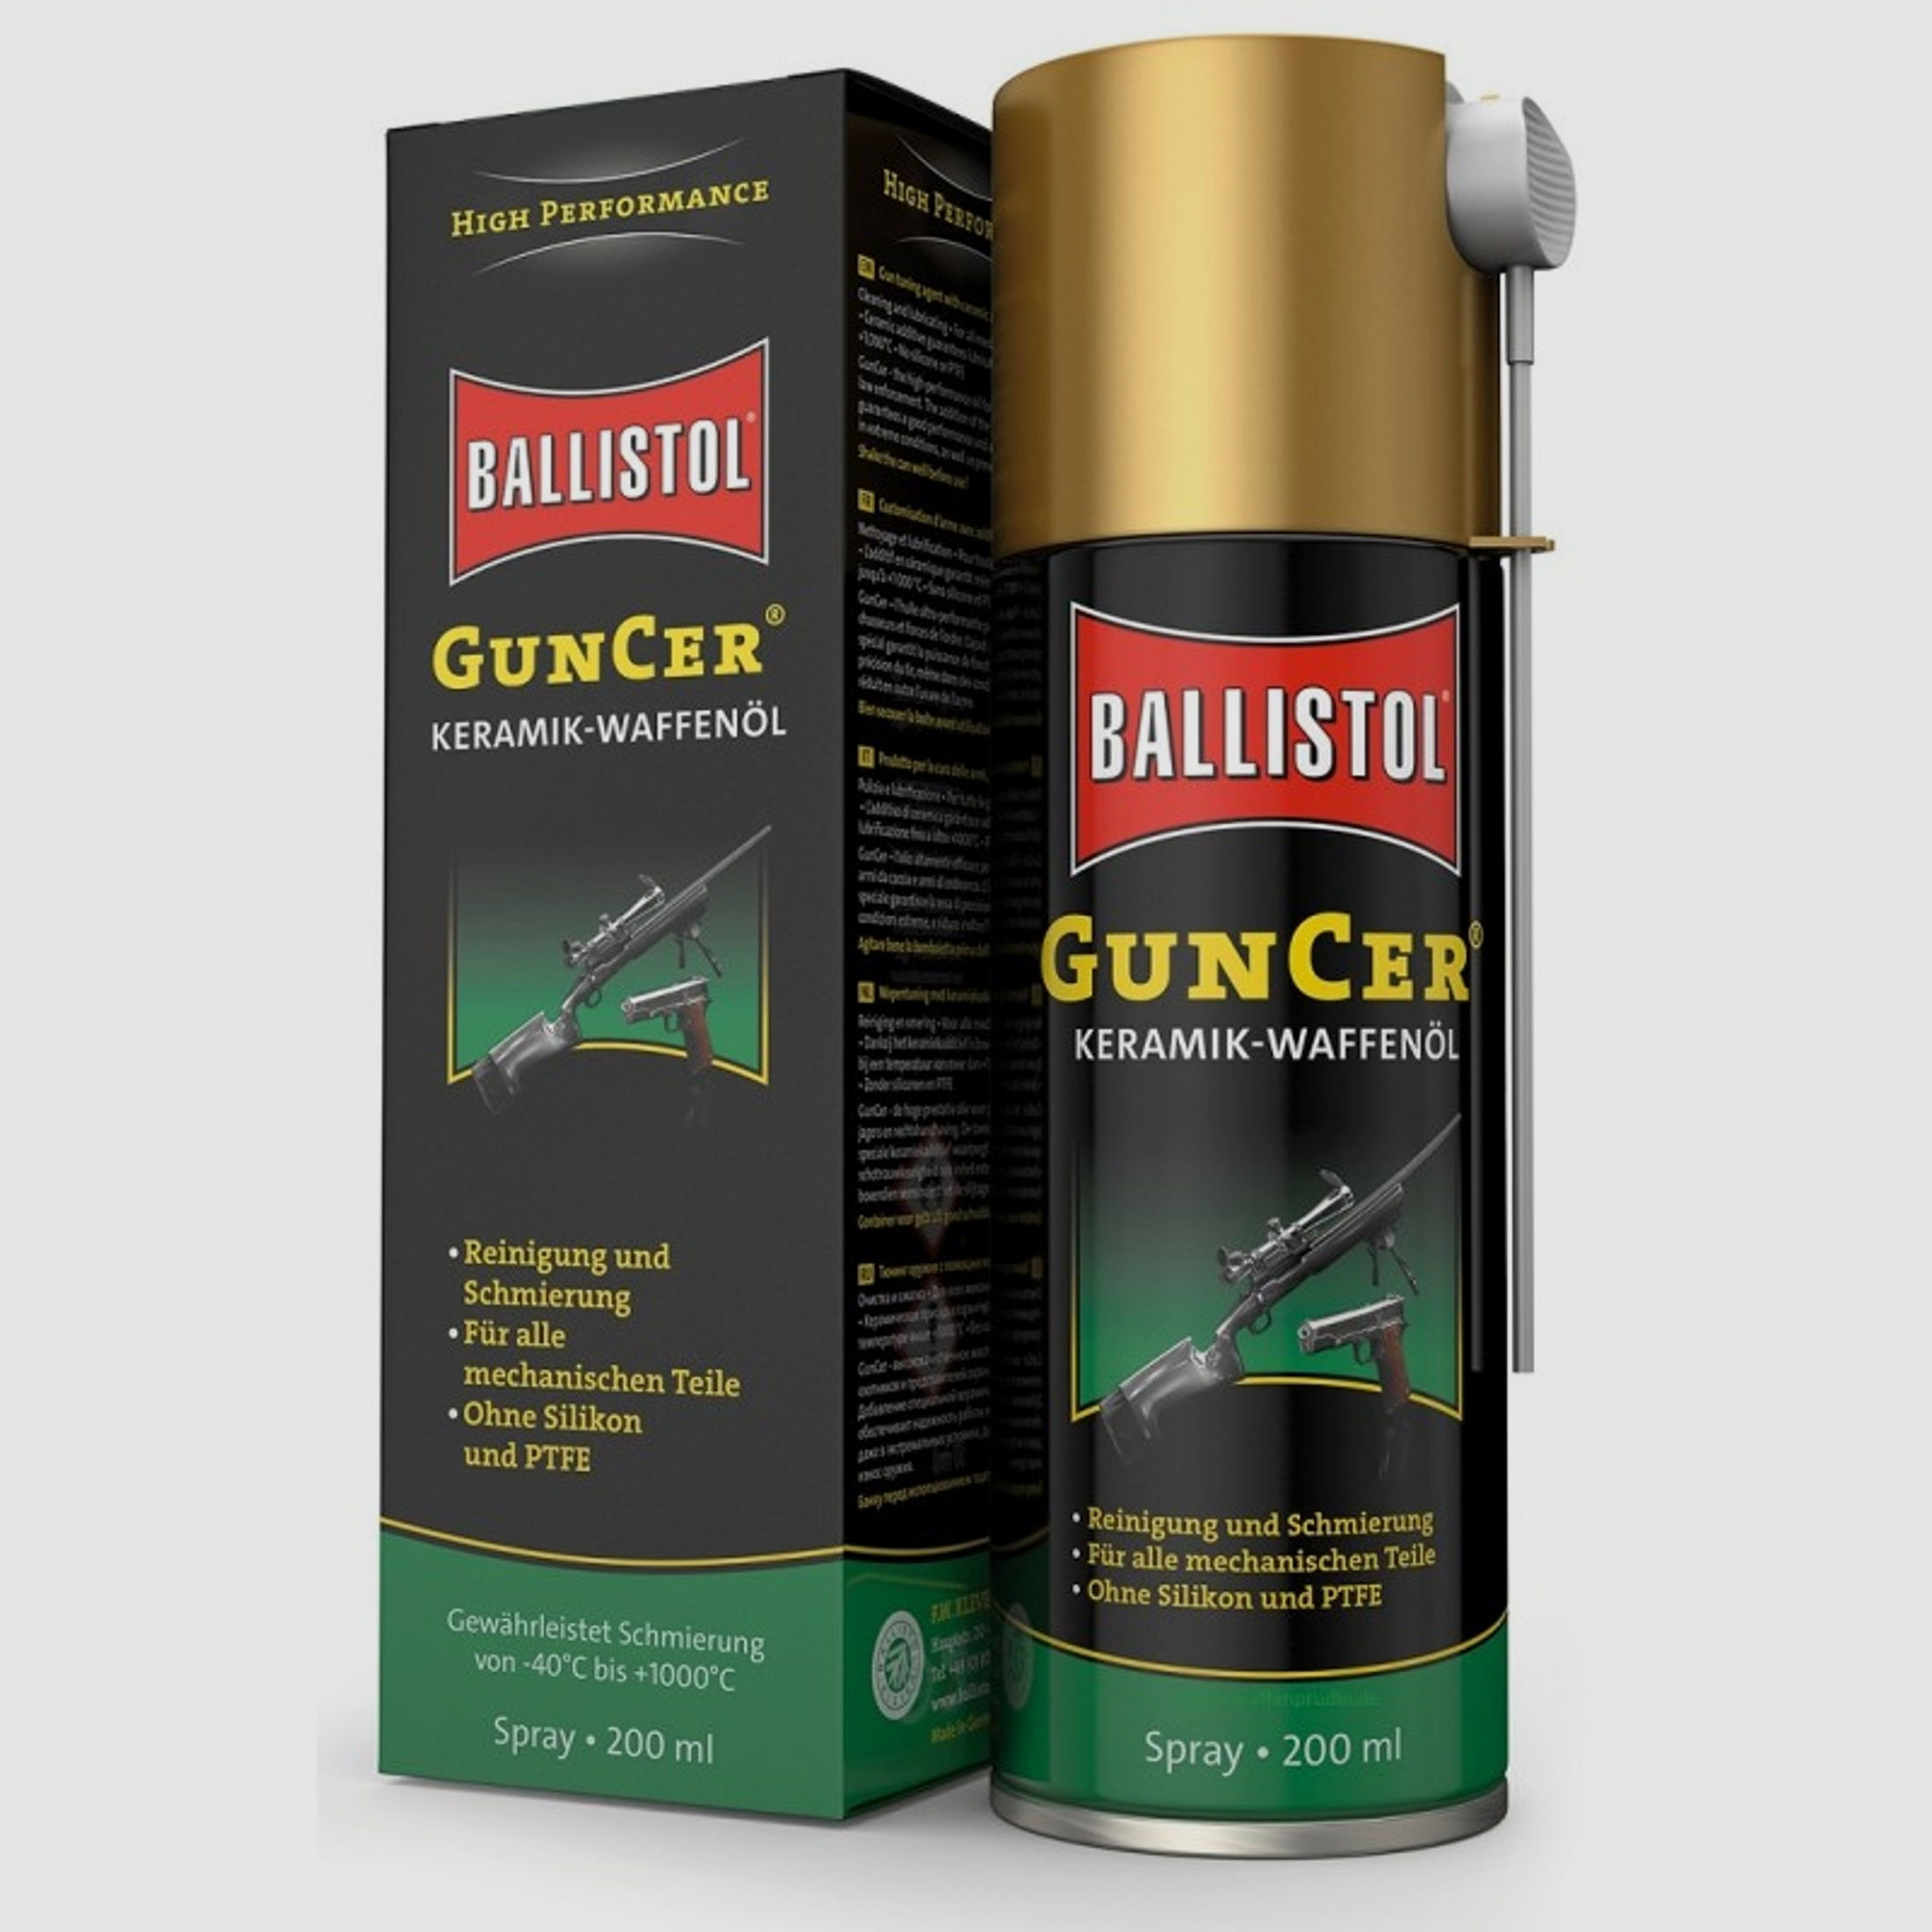 BALLISTOL GunCer Waffenöl mit Keramik-Additiven 200ml